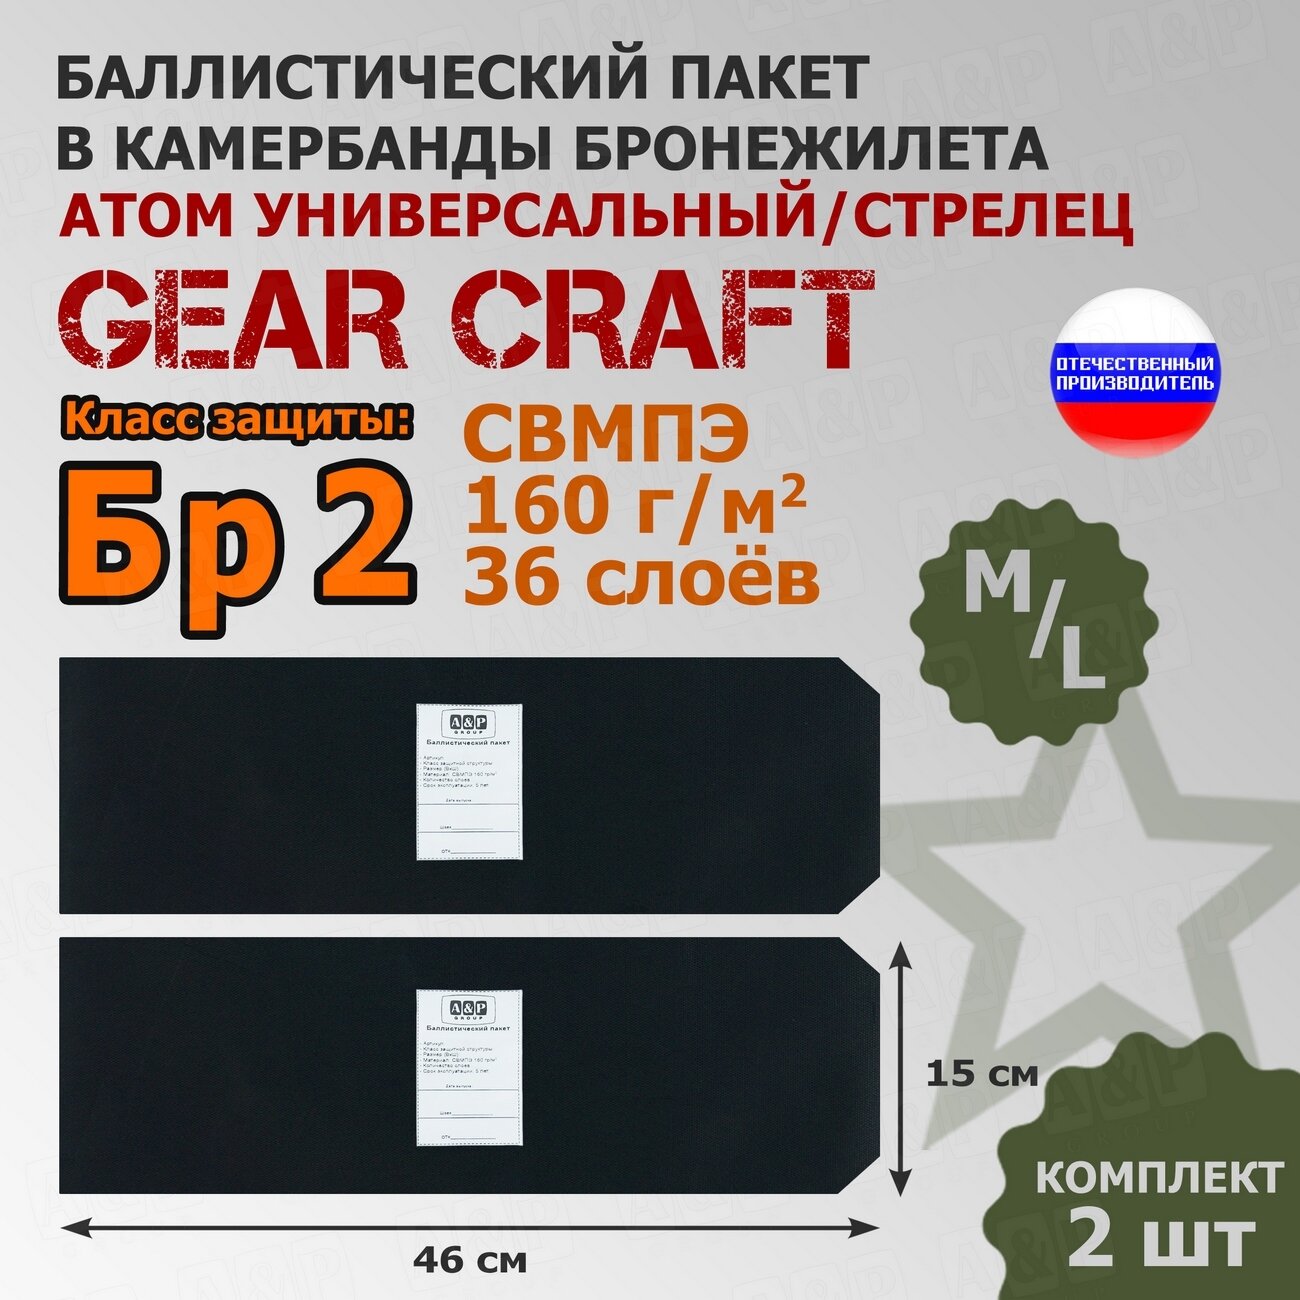 Баллистические пакеты в камербанды бронежилета Атом Универсальный/Стрелец Gear Craft (размер M/L). 46x15 см. Класс защитной структуры Бр 2.